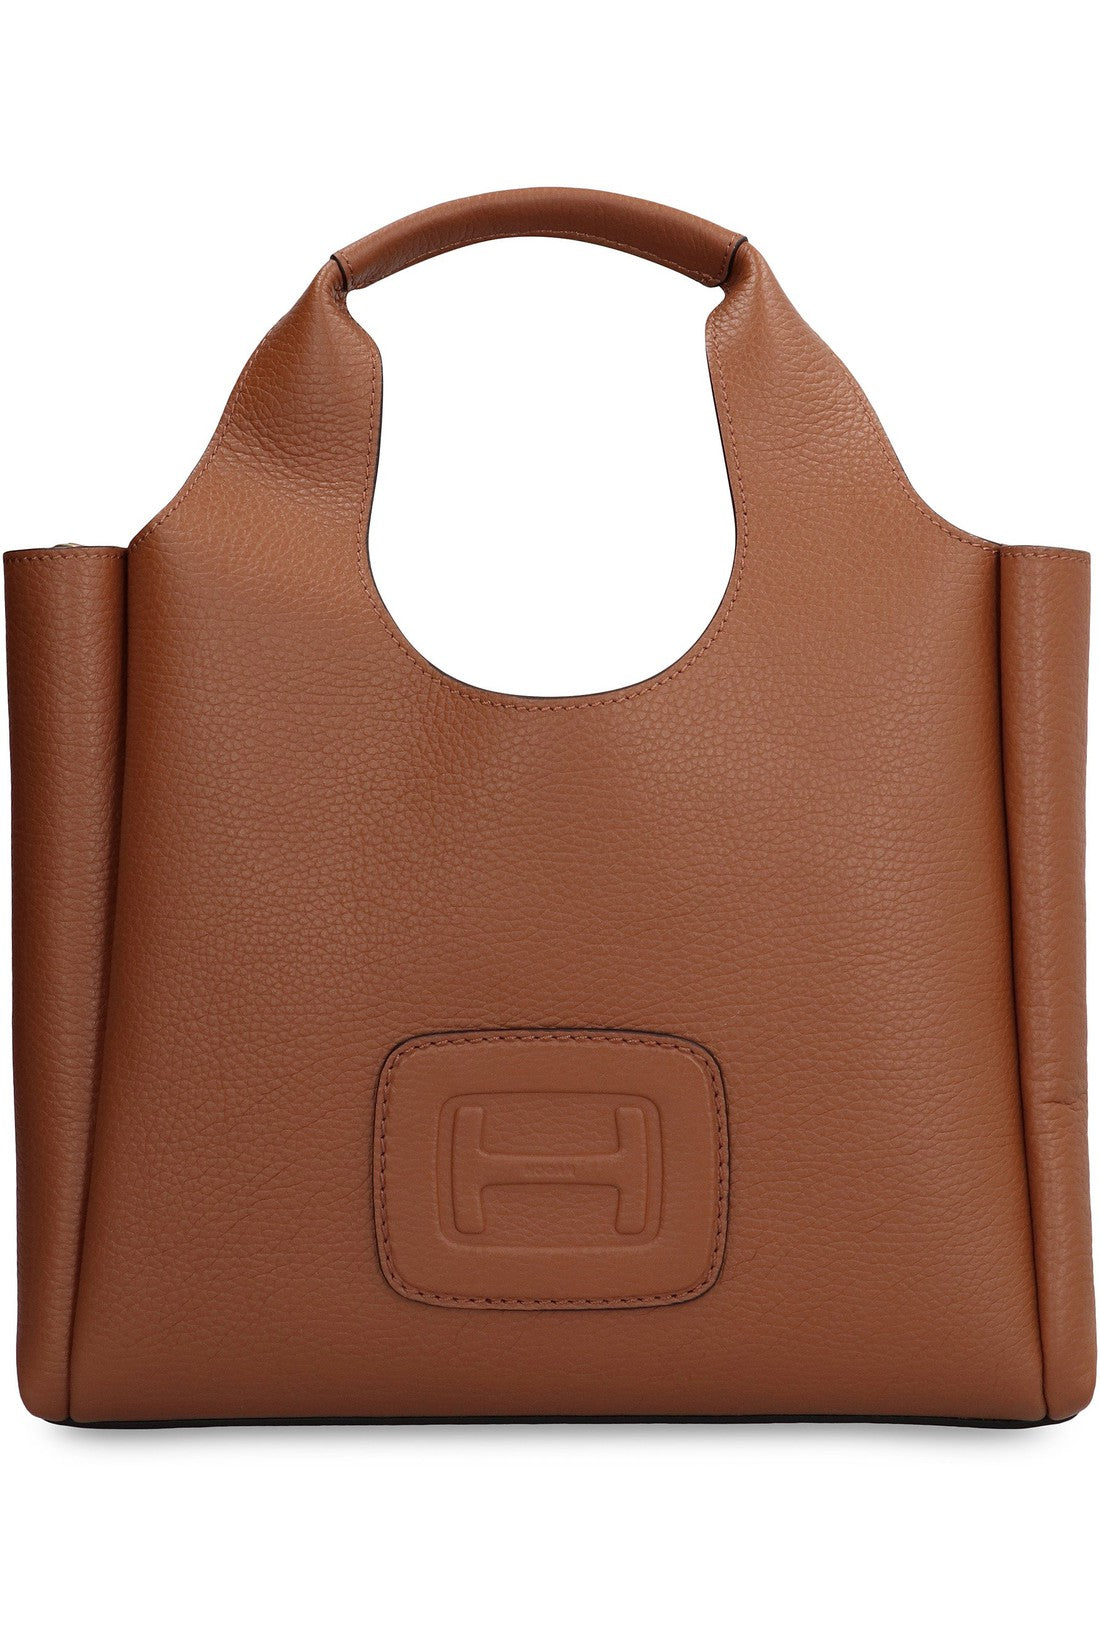 Hogan-OUTLET-SALE-Hogan H-Bag Leather tote-ARCHIVIST